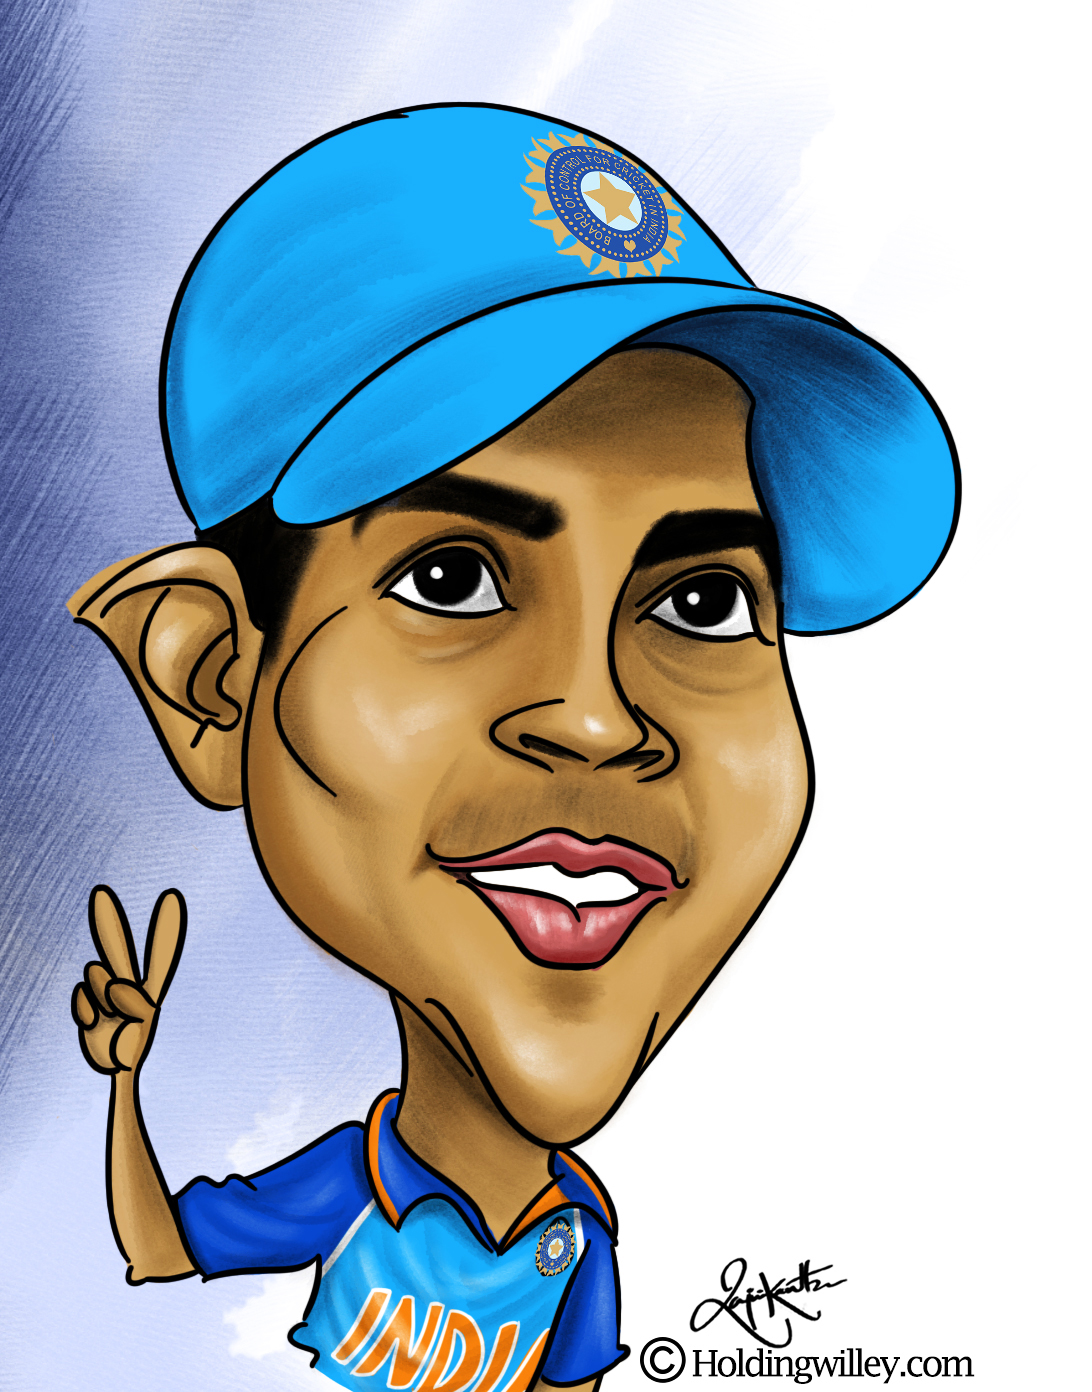 Prithvi_Shaw_India_Cricket